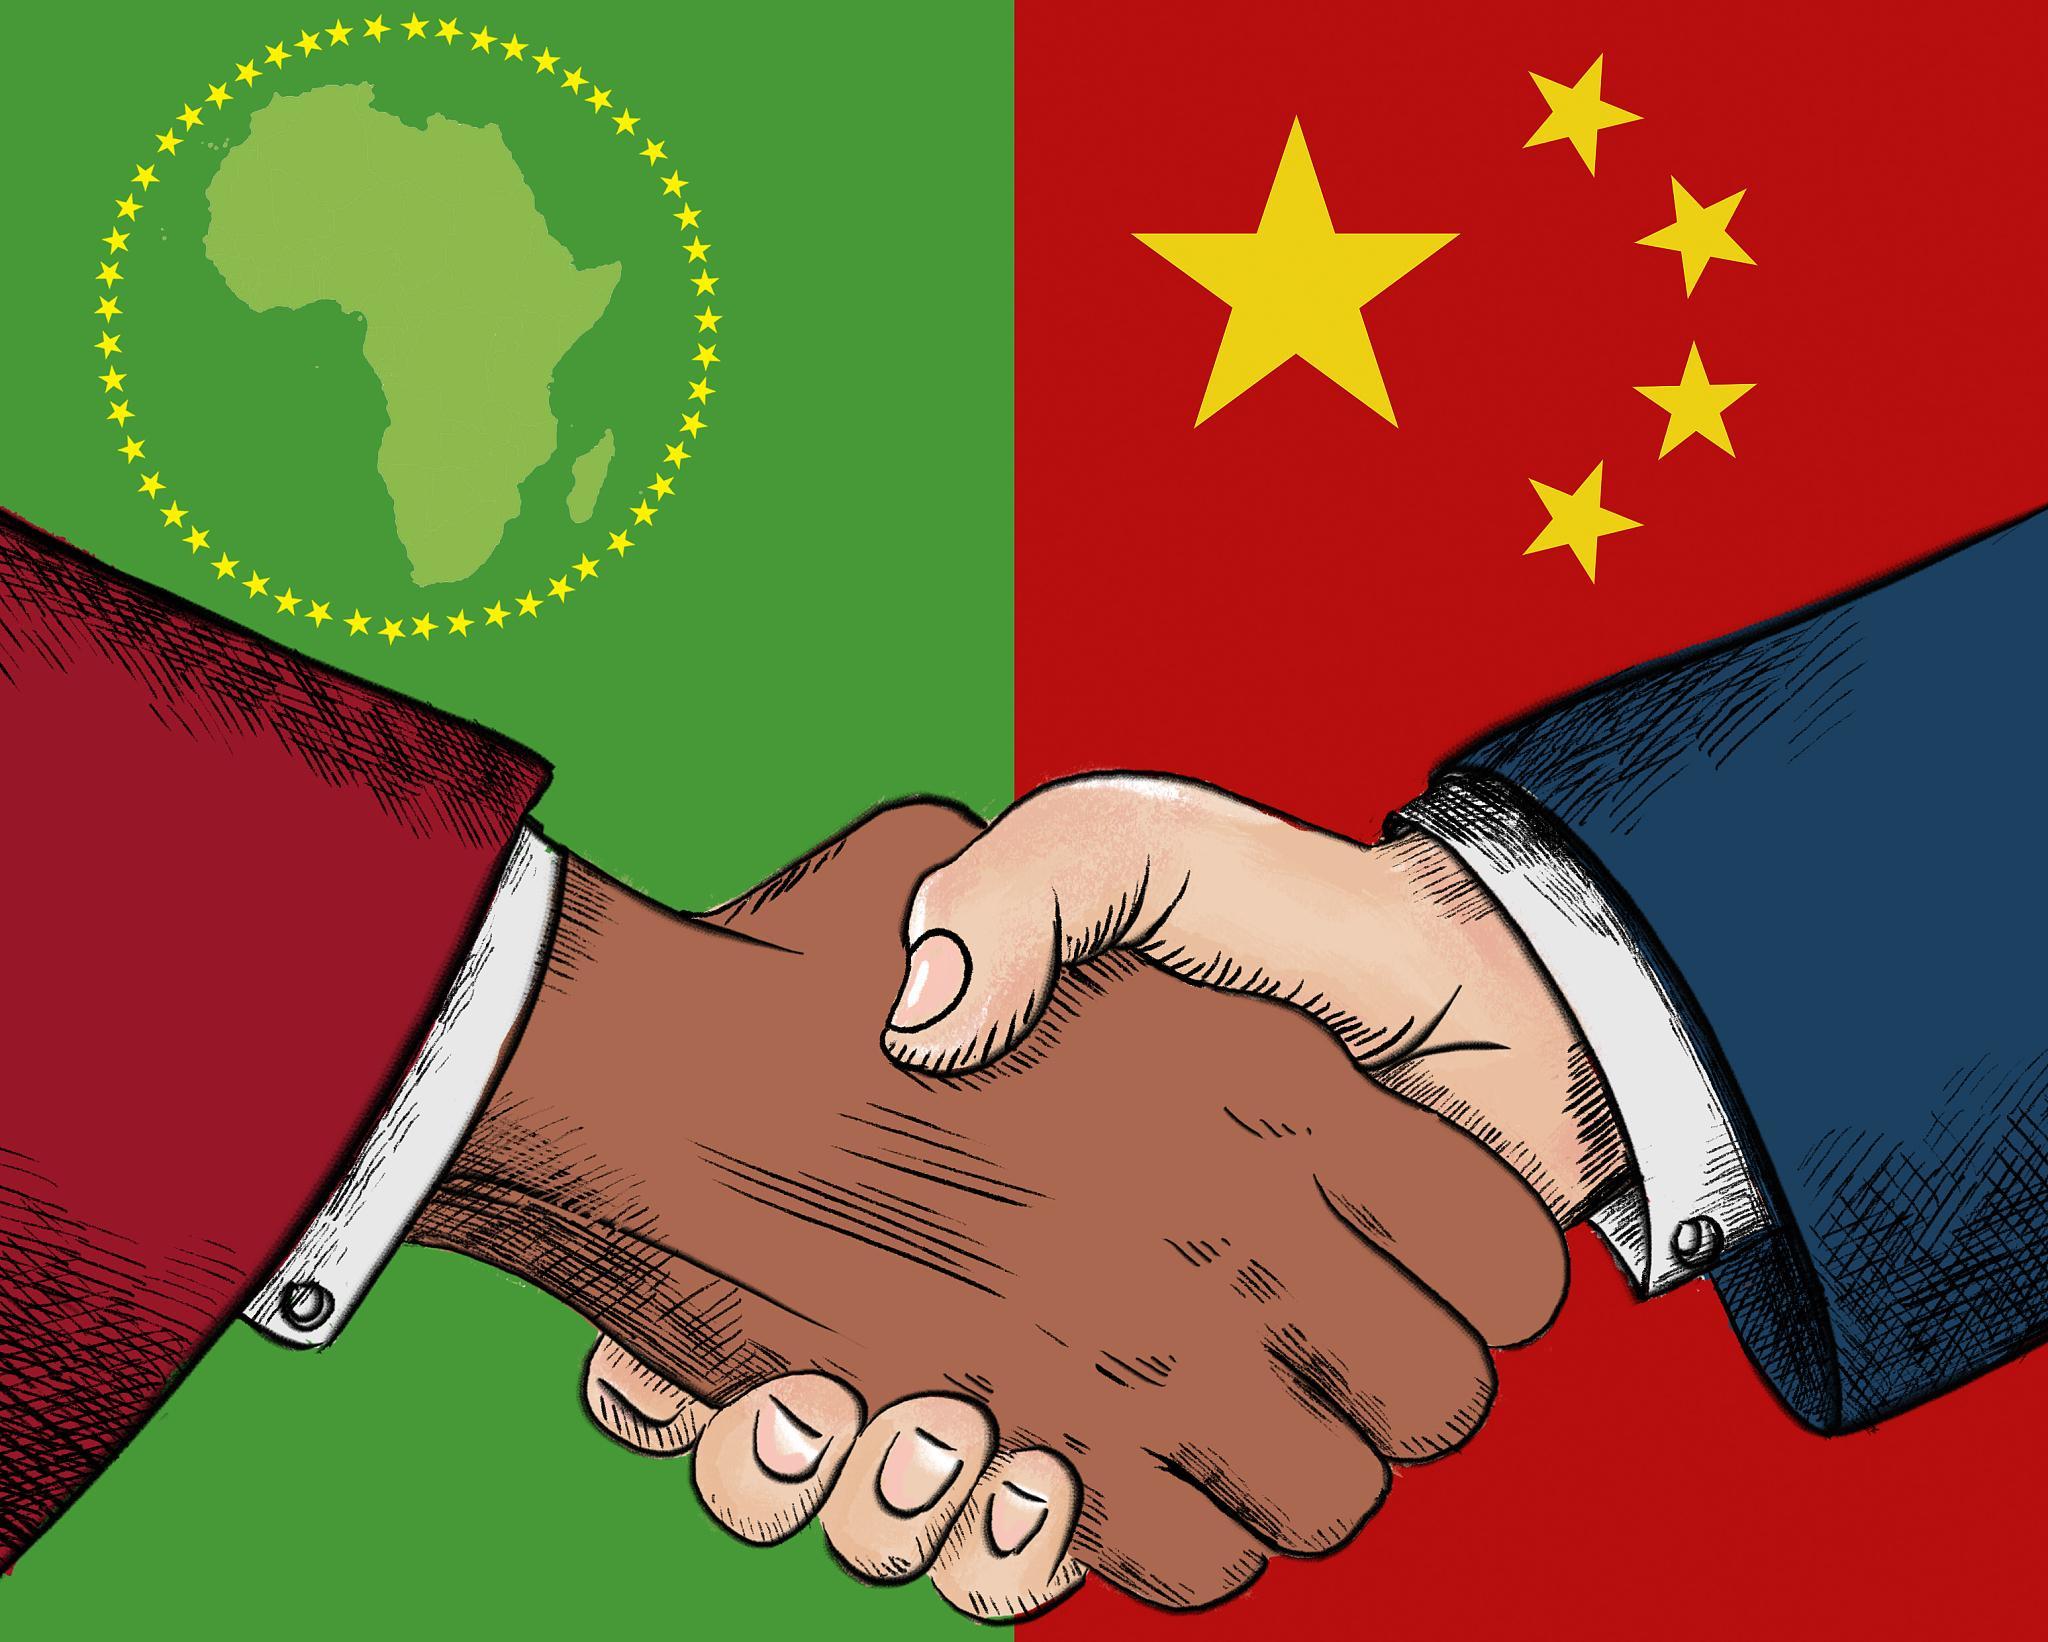 La segunda Expo Económica y Comercial China-África dará comienzo en Changsha en septiembre